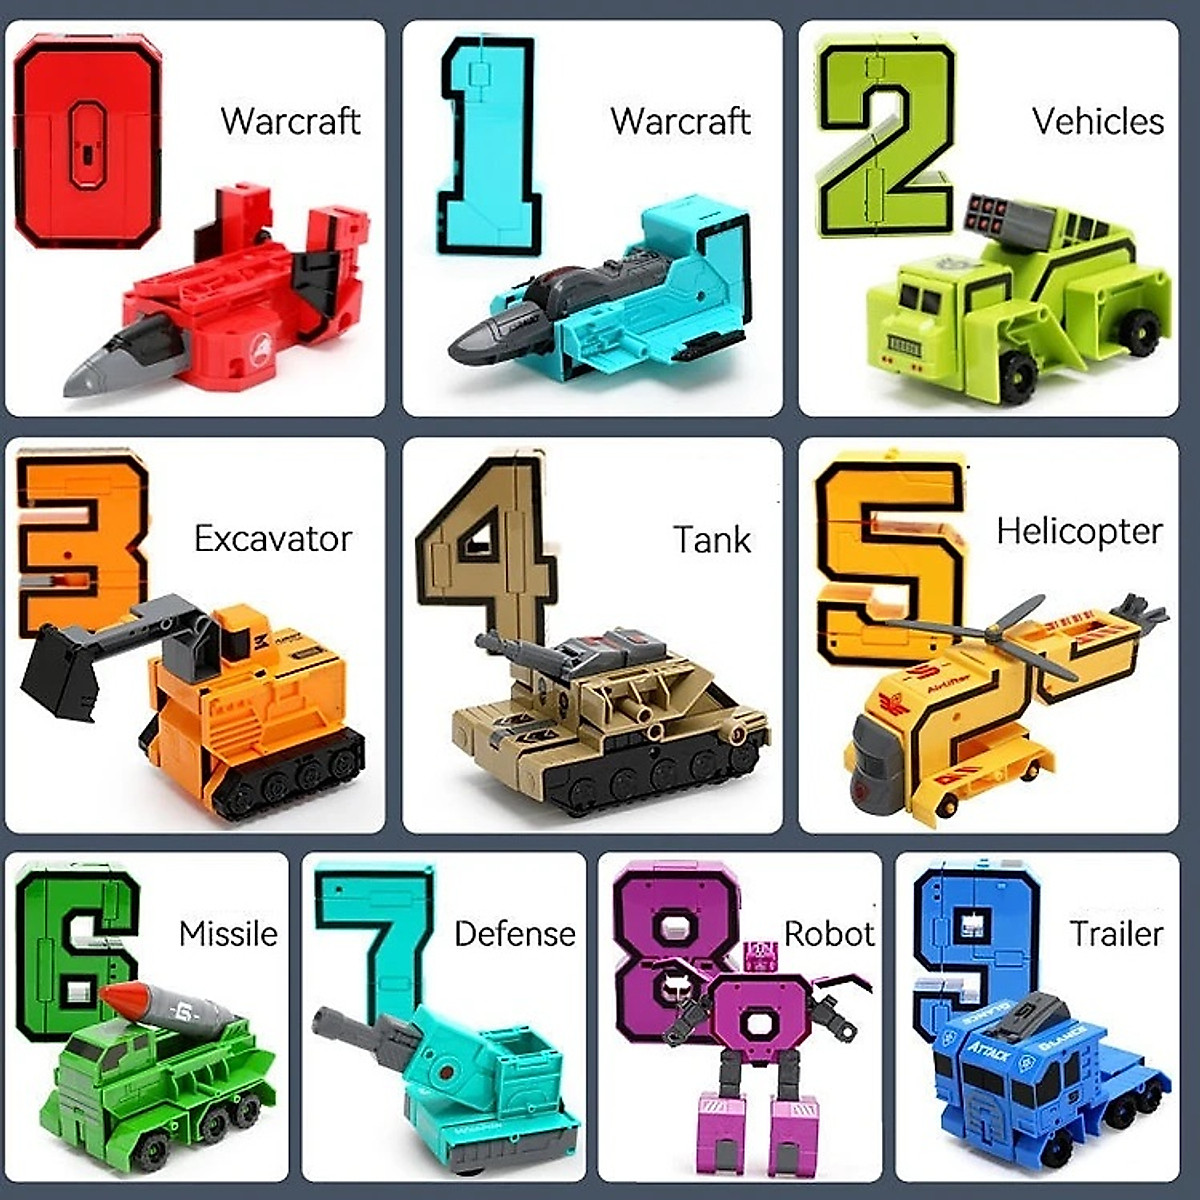 Bộ đồ chơi xếp hình lắp ráp mô hình ô tô, xe cẩu, xe tăng, máy xúc, máy bay từ các chữ số từ 0 đến 9, có thể lắp ráp thành siêu nhân rô bốt, thỏa sức sáng tạo và nhận diện chữ số (HÀNG LOẠI ĐẠI)